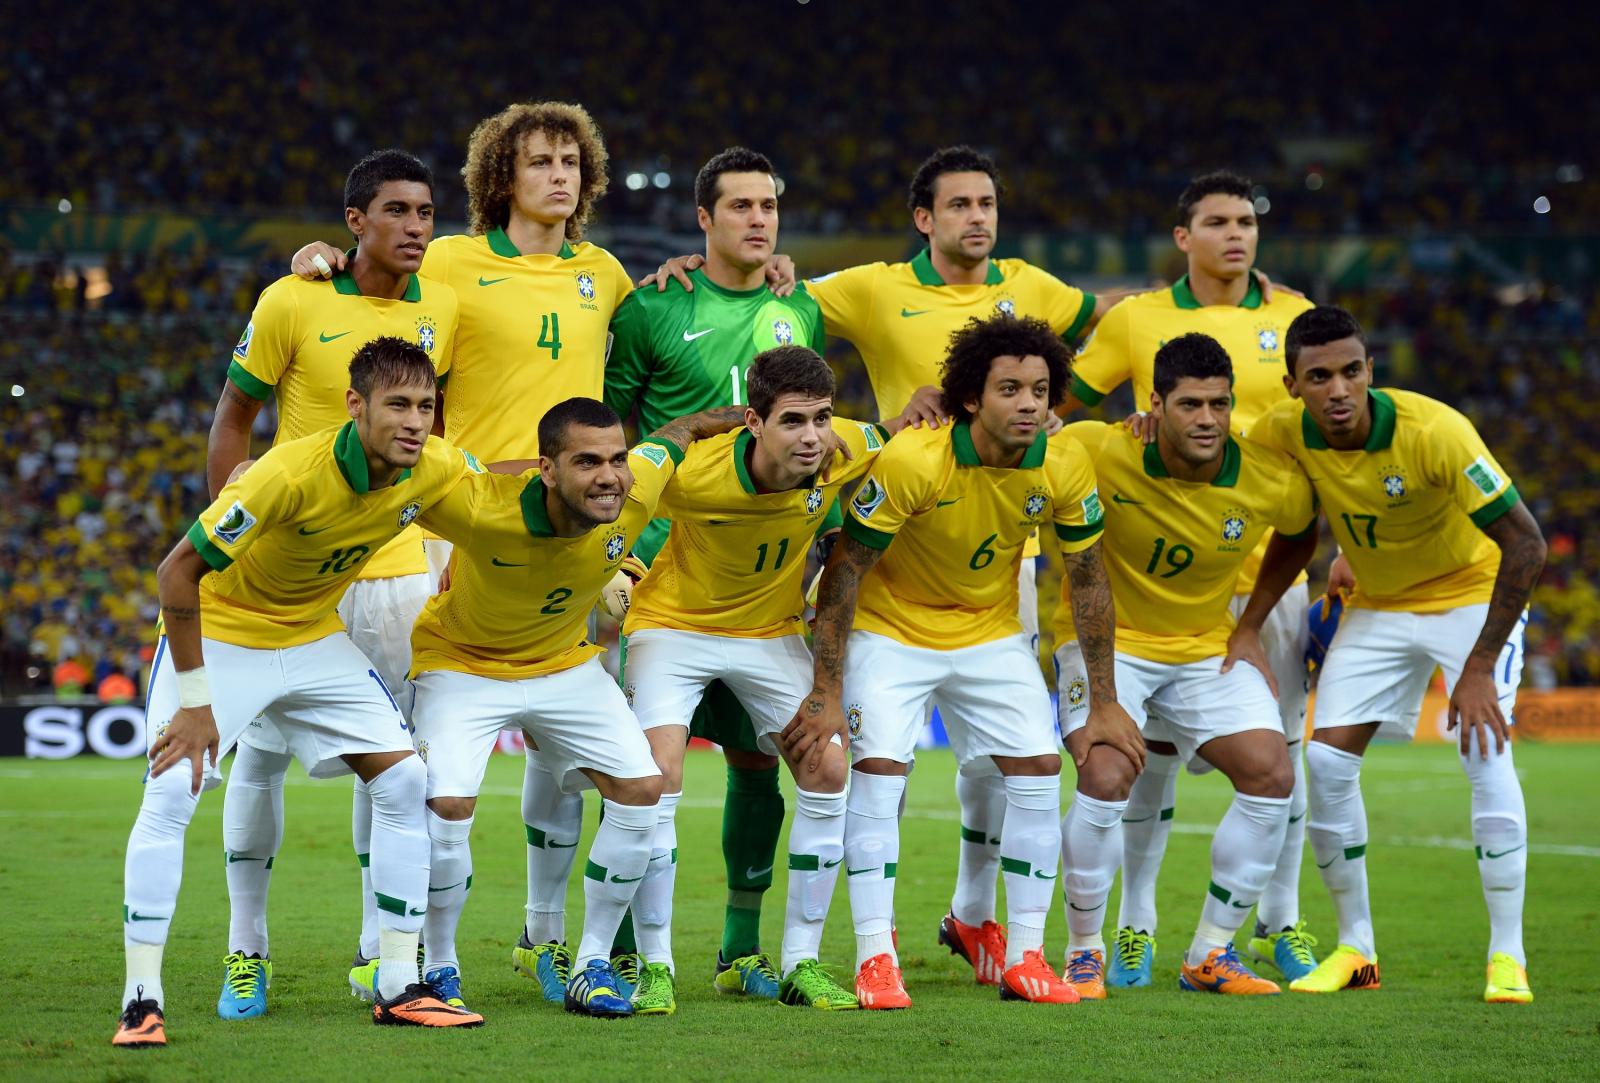 Brazil Football Team Wallpapers